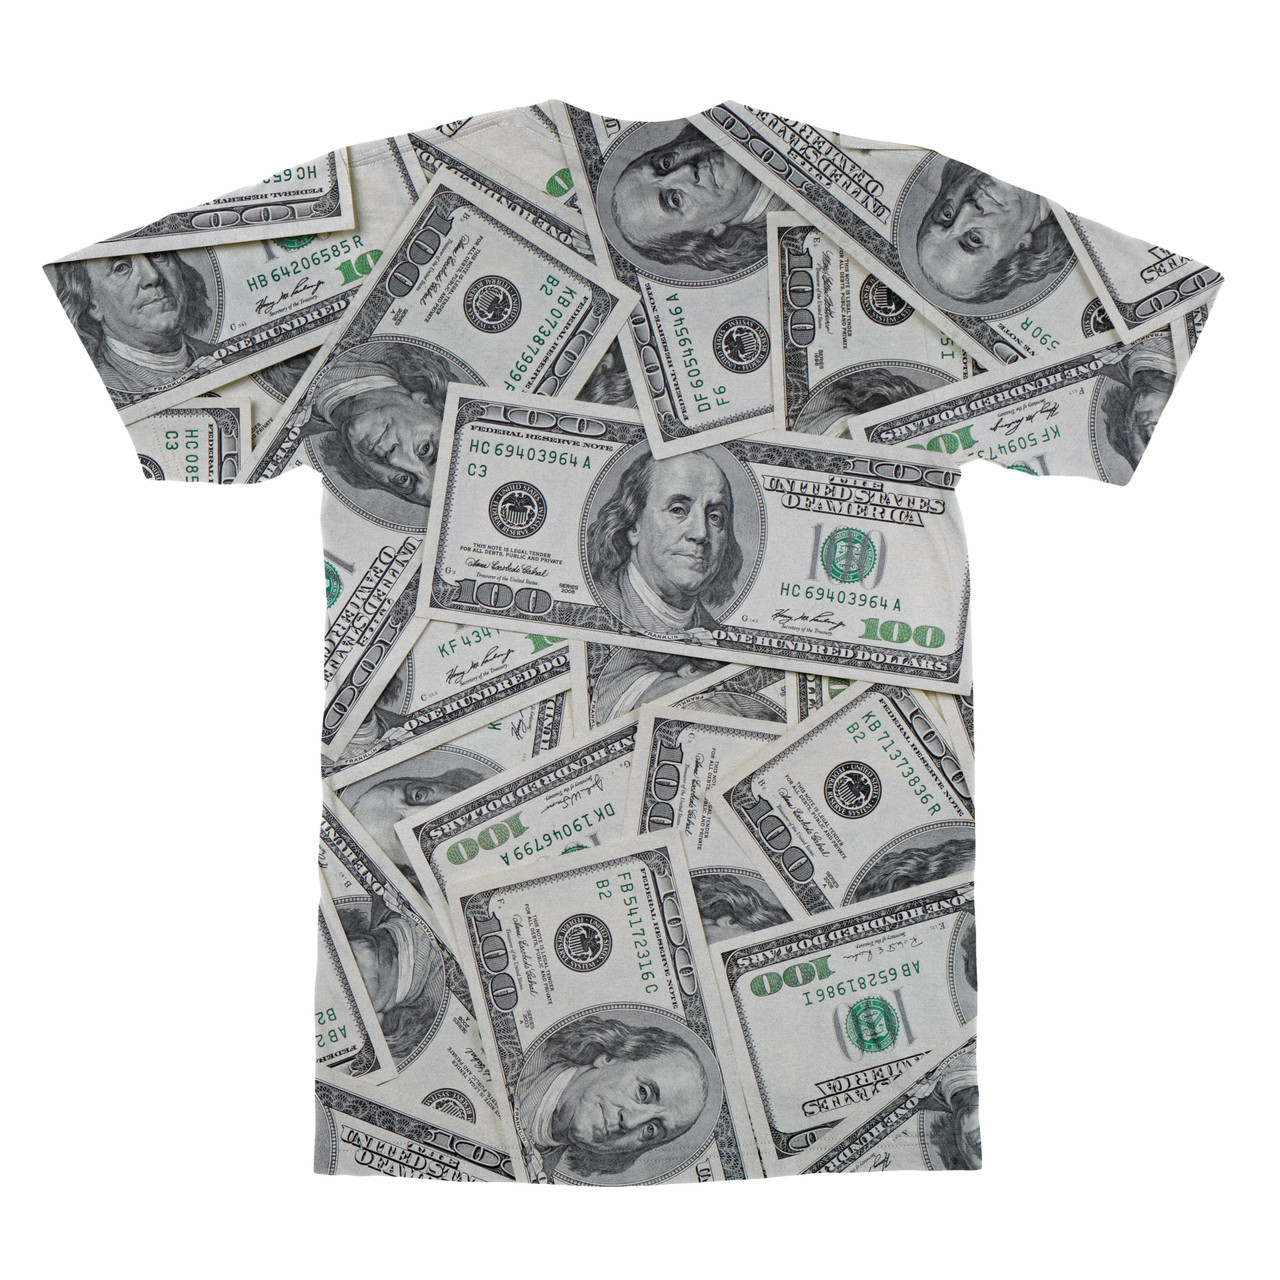 100 Dollar Bill T Shirt Subliworks - 100 dollar t shirt roblox